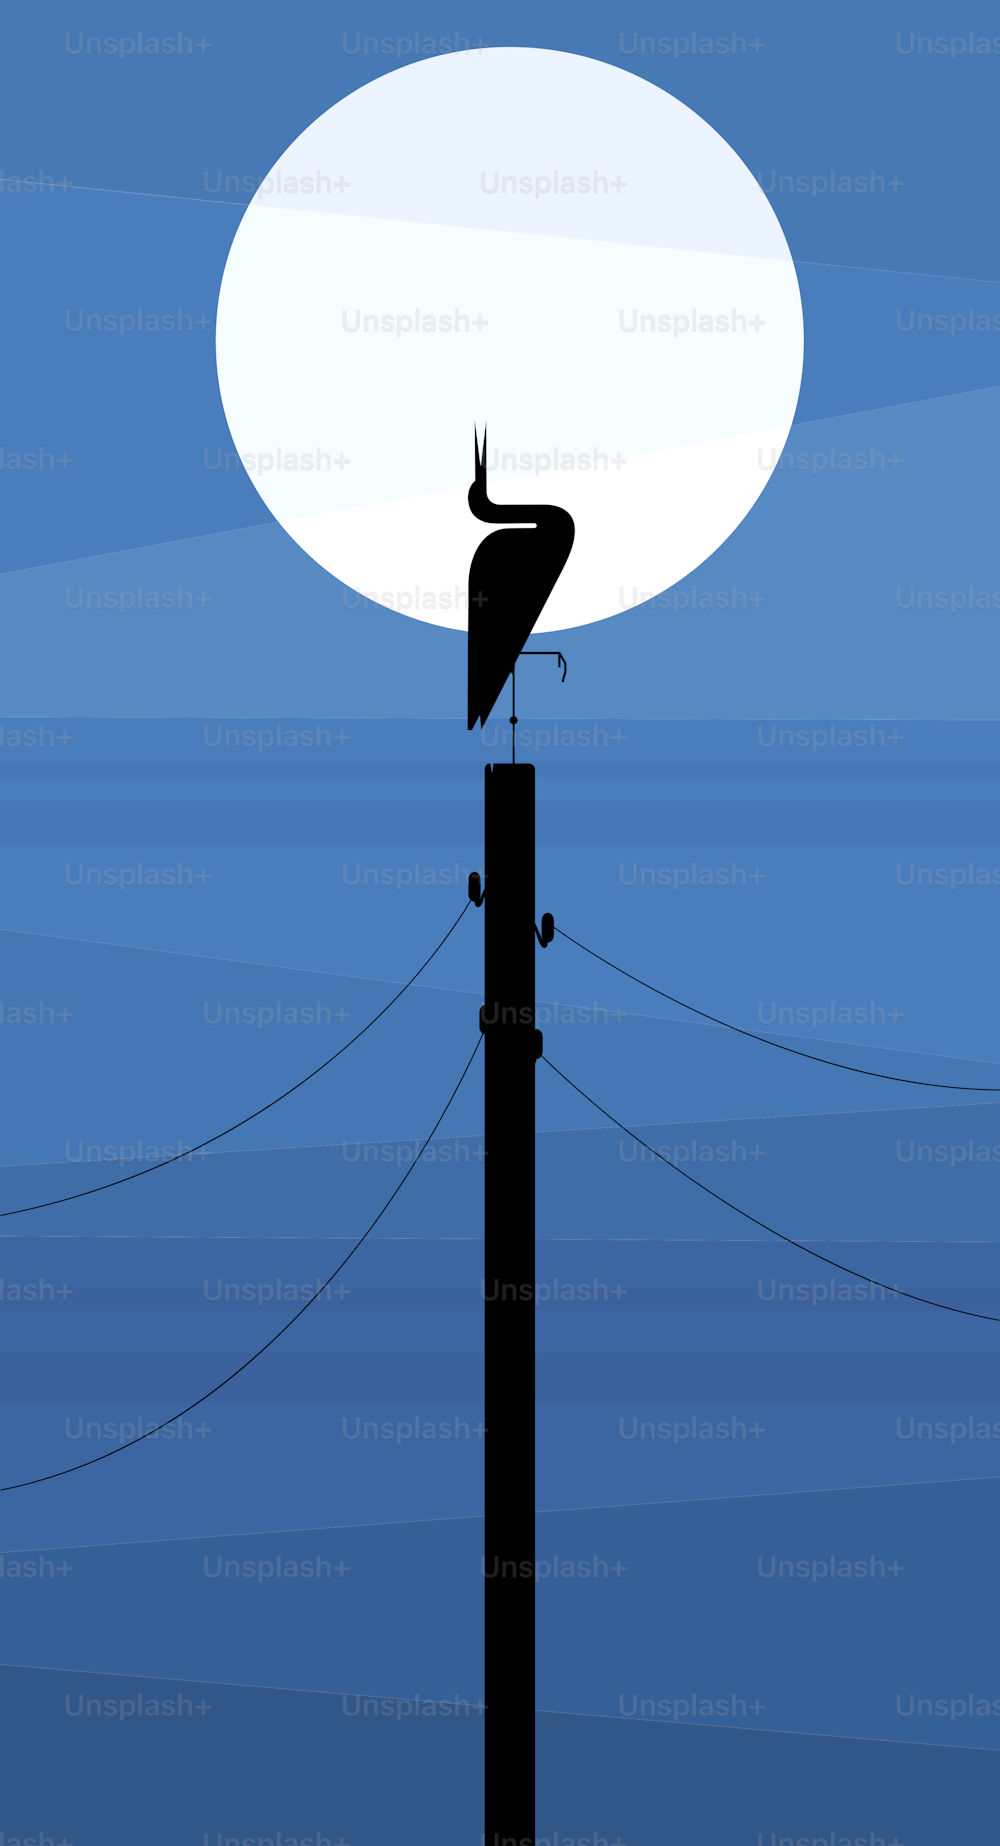 저녁 하늘을 배경으로 전선 기둥에 있는 황새의 실루엣, 양식화된 이미지, 벡터 일러스트레이션